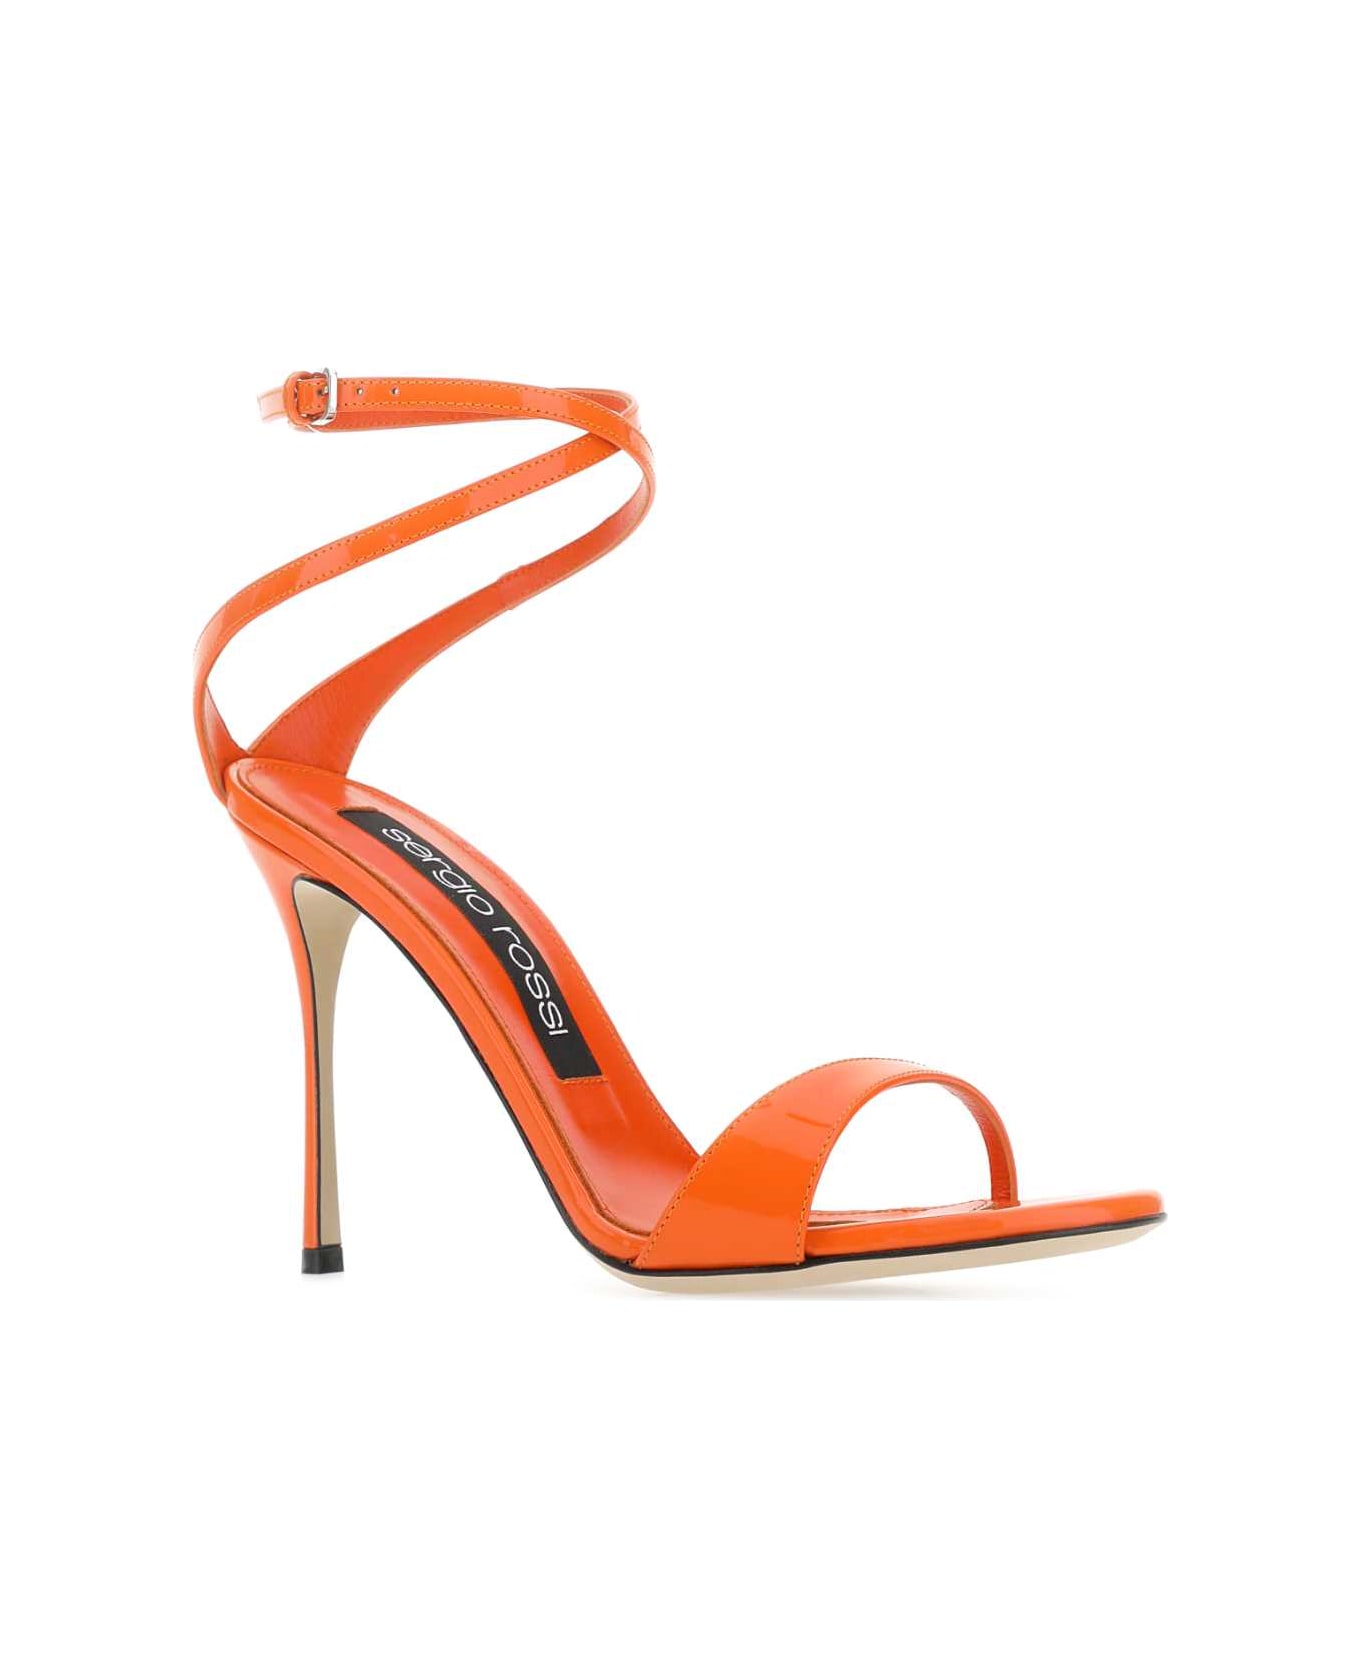 Sergio Rossi Orange Leather Godiva Sandals - Orange